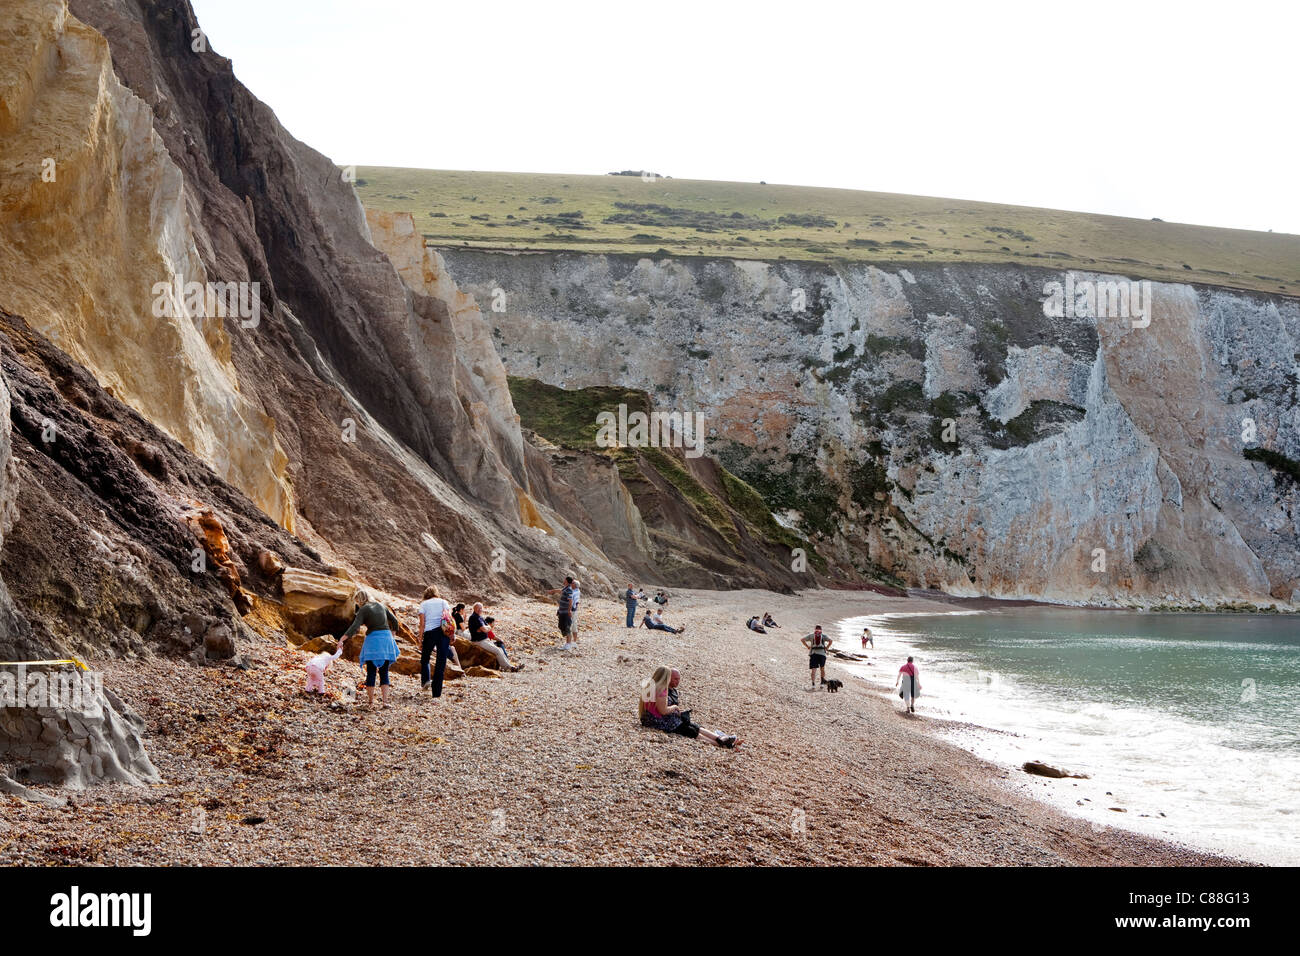 De l'Alun Bay, île de Wight. D'intérêt géologique et une attraction touristique, la baie est réputée pour ses falaises de sable coloré. Banque D'Images